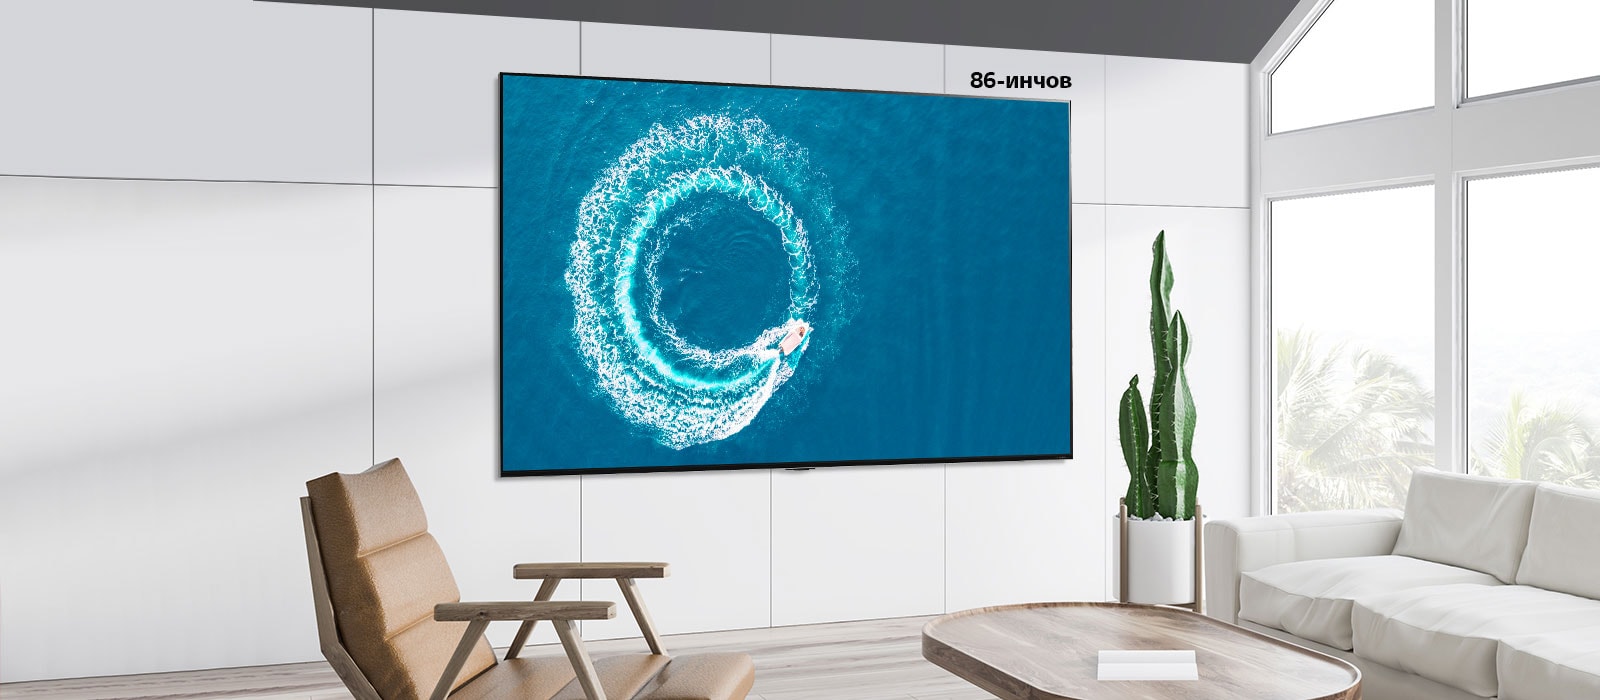 Сравнение между 55-инчов екран и 86-инчов екран, които са окачени на стената и показват лодка, която прави вълни в средата на морето.